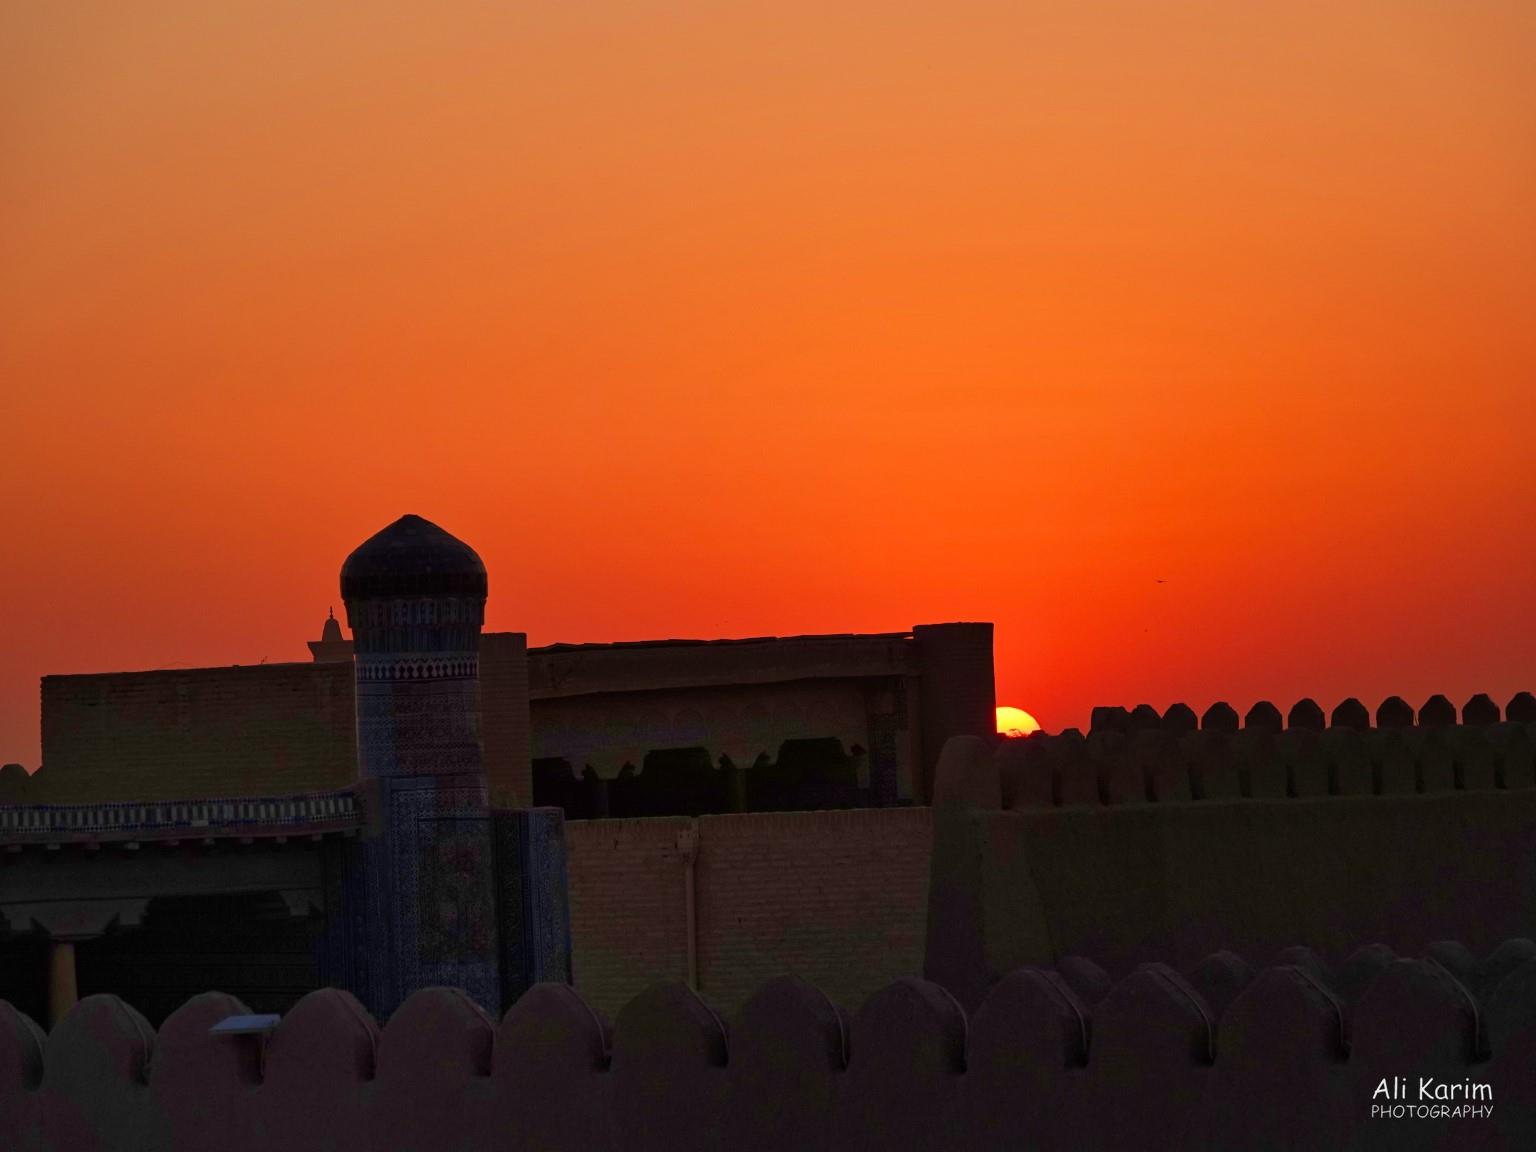 Khiva, Oct 2019, Sunset over the Kunha Ark Citadel